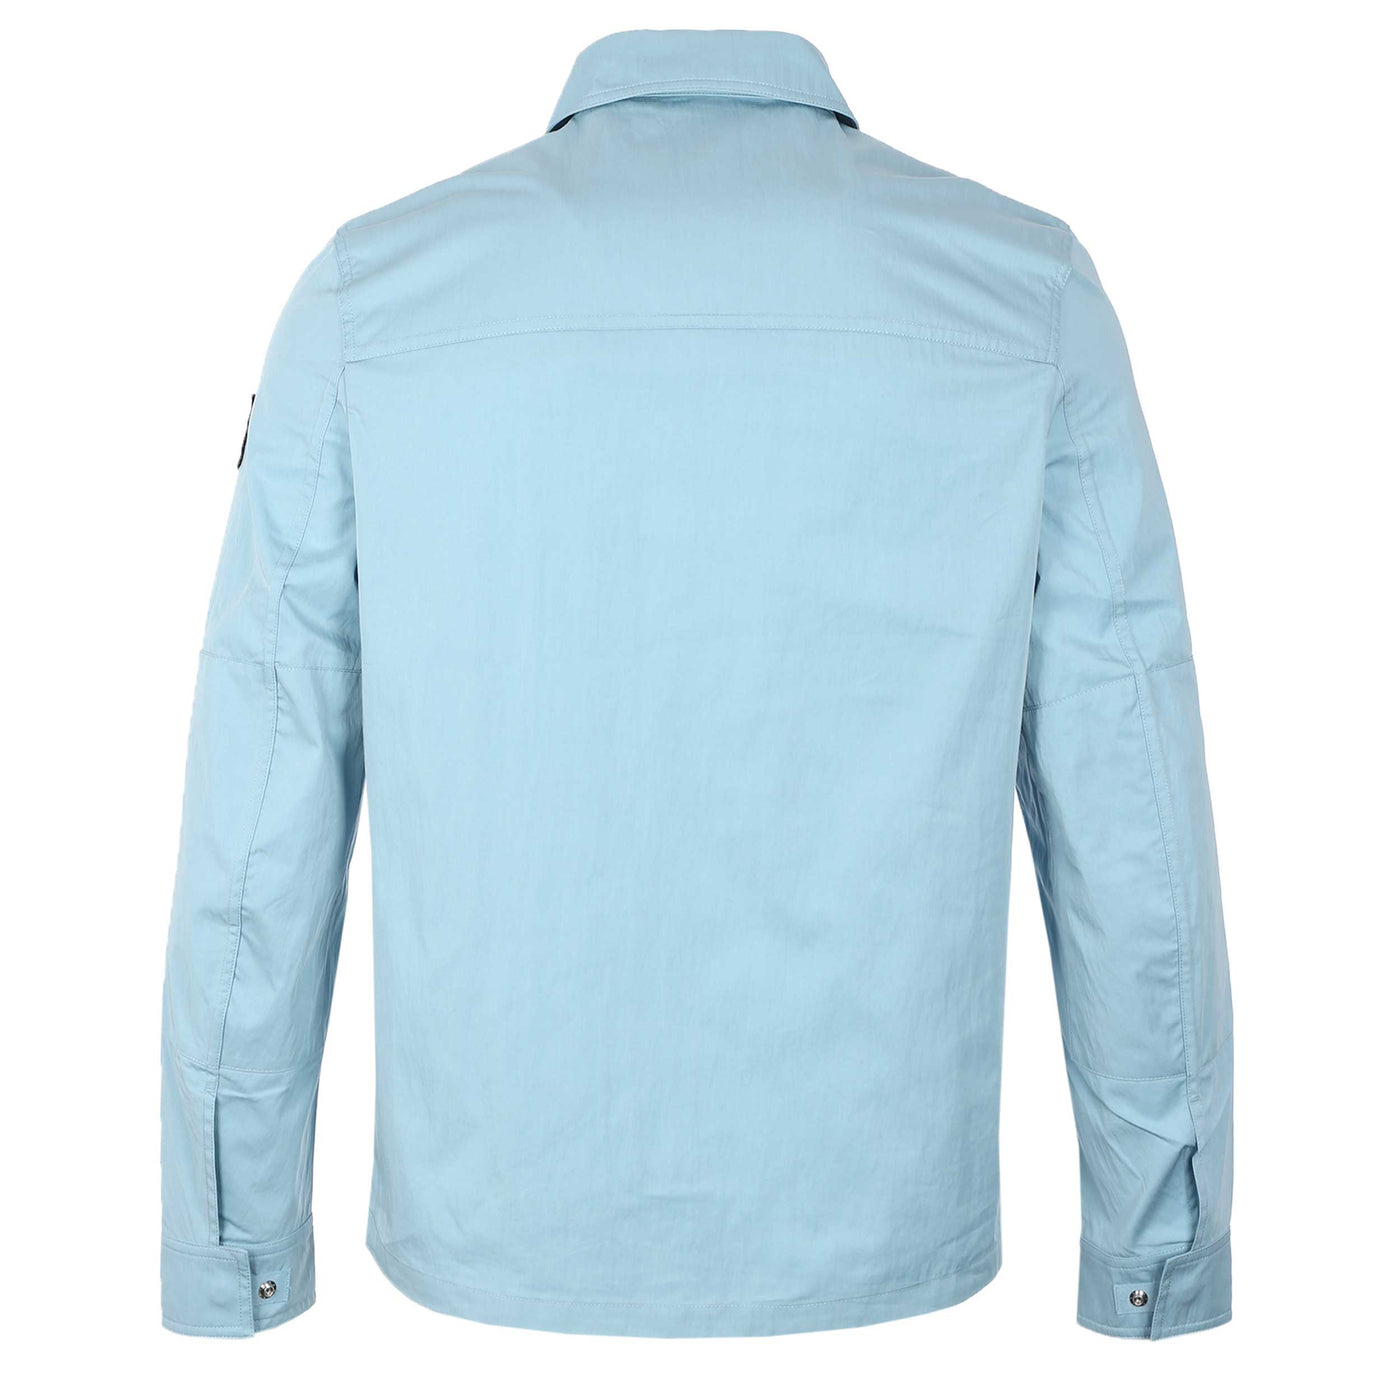 Belstaff Runner Overshirt in Skyline Blue Back